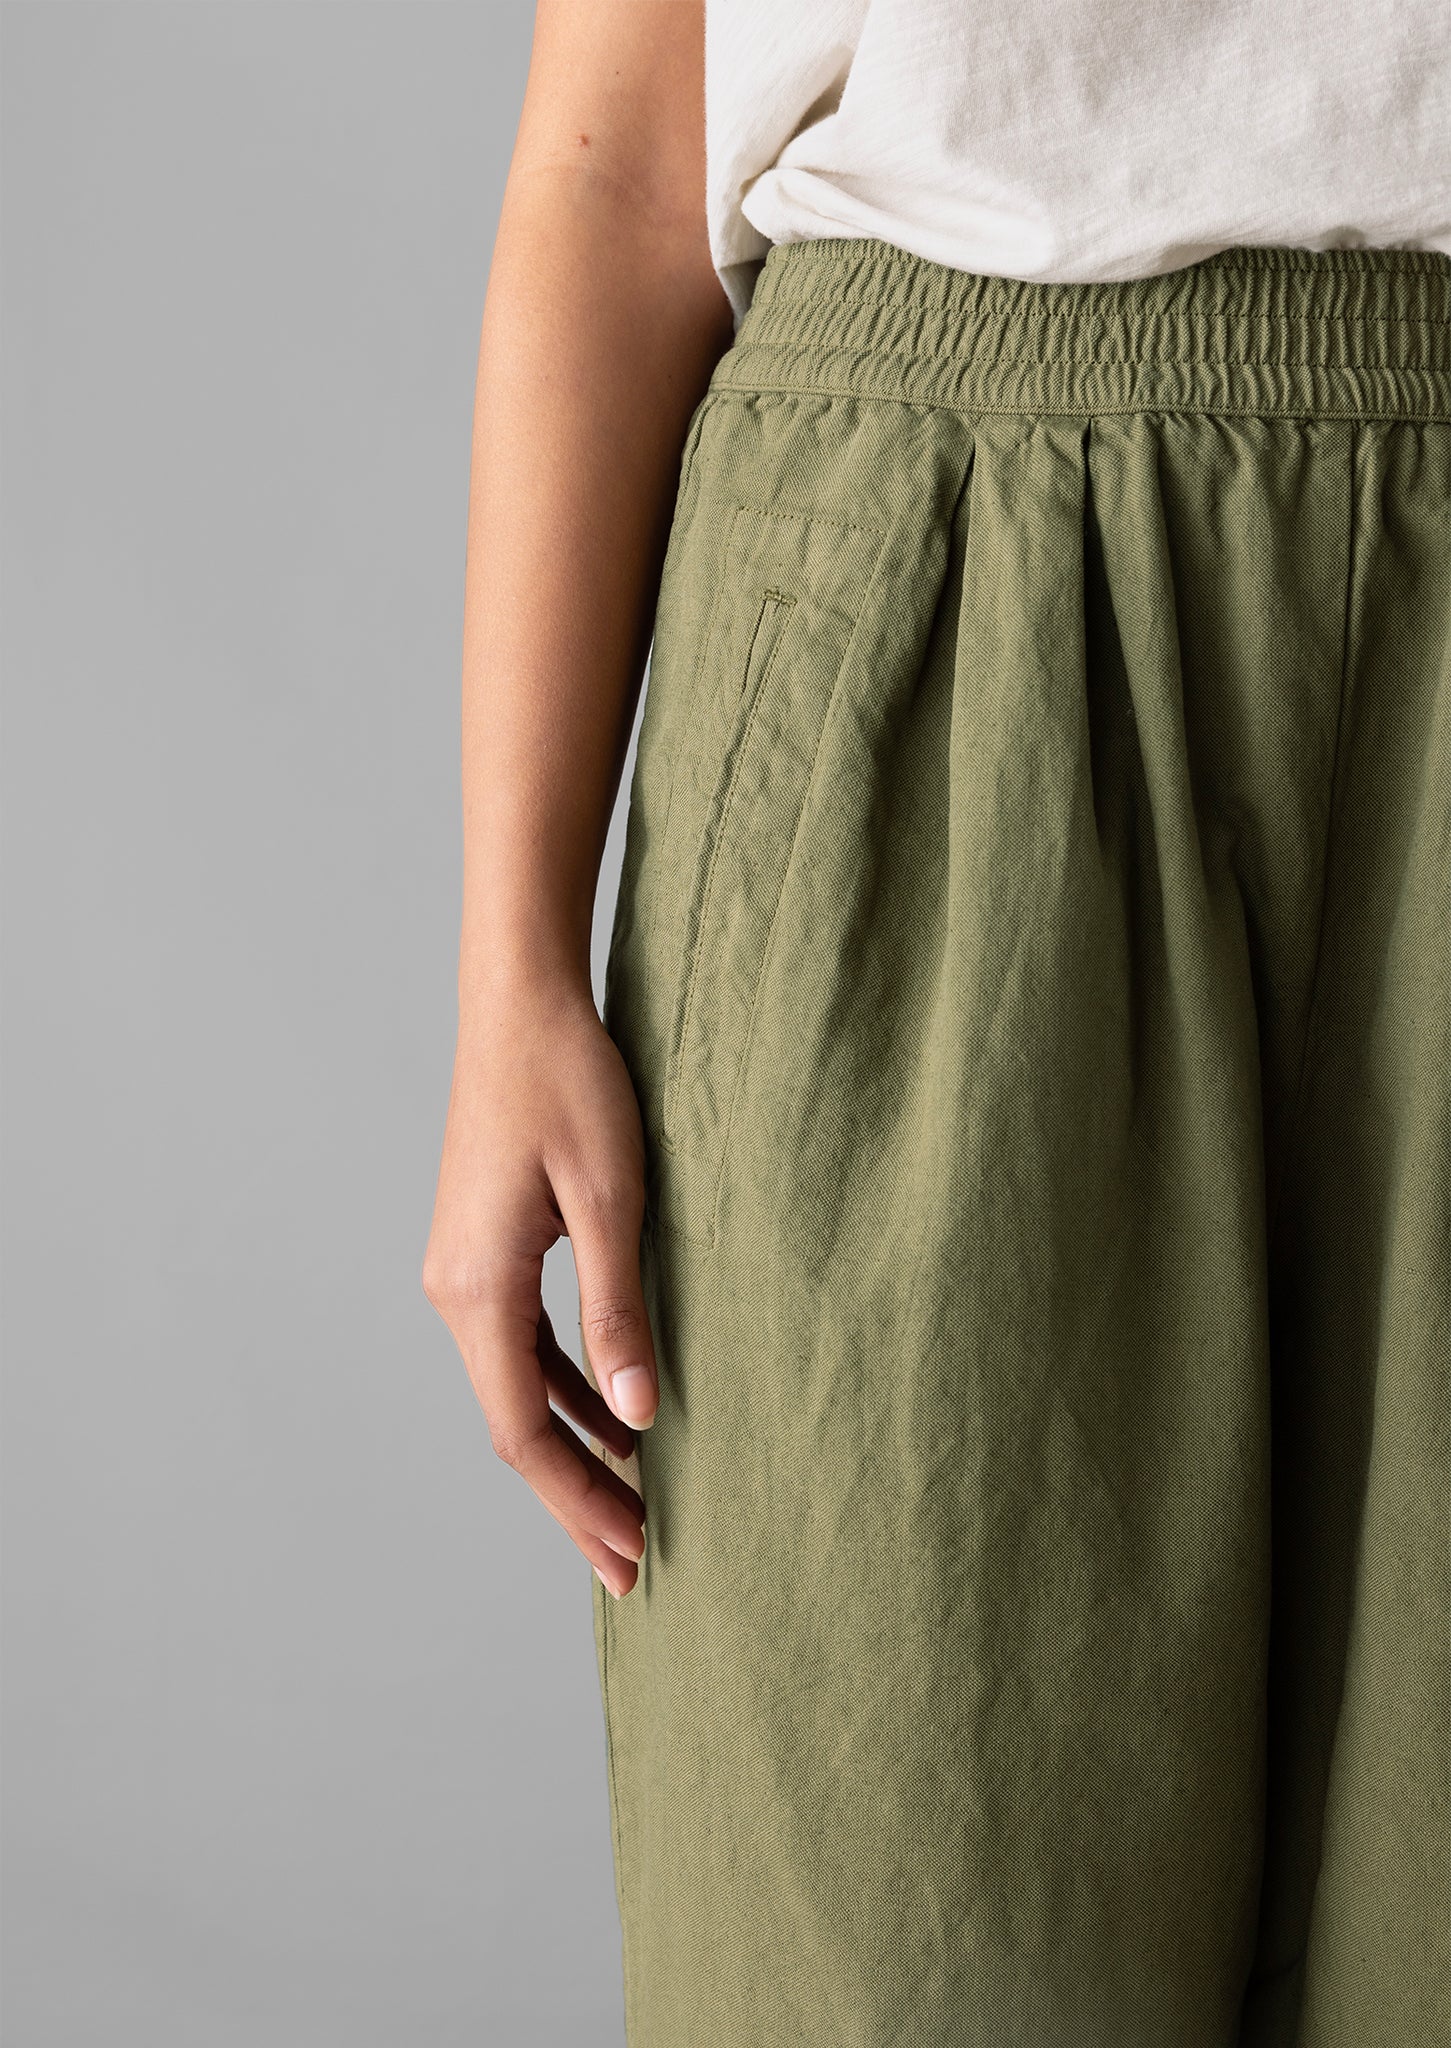 Cotton Linen Canvas Barrel Leg Trousers | Oil Cloth